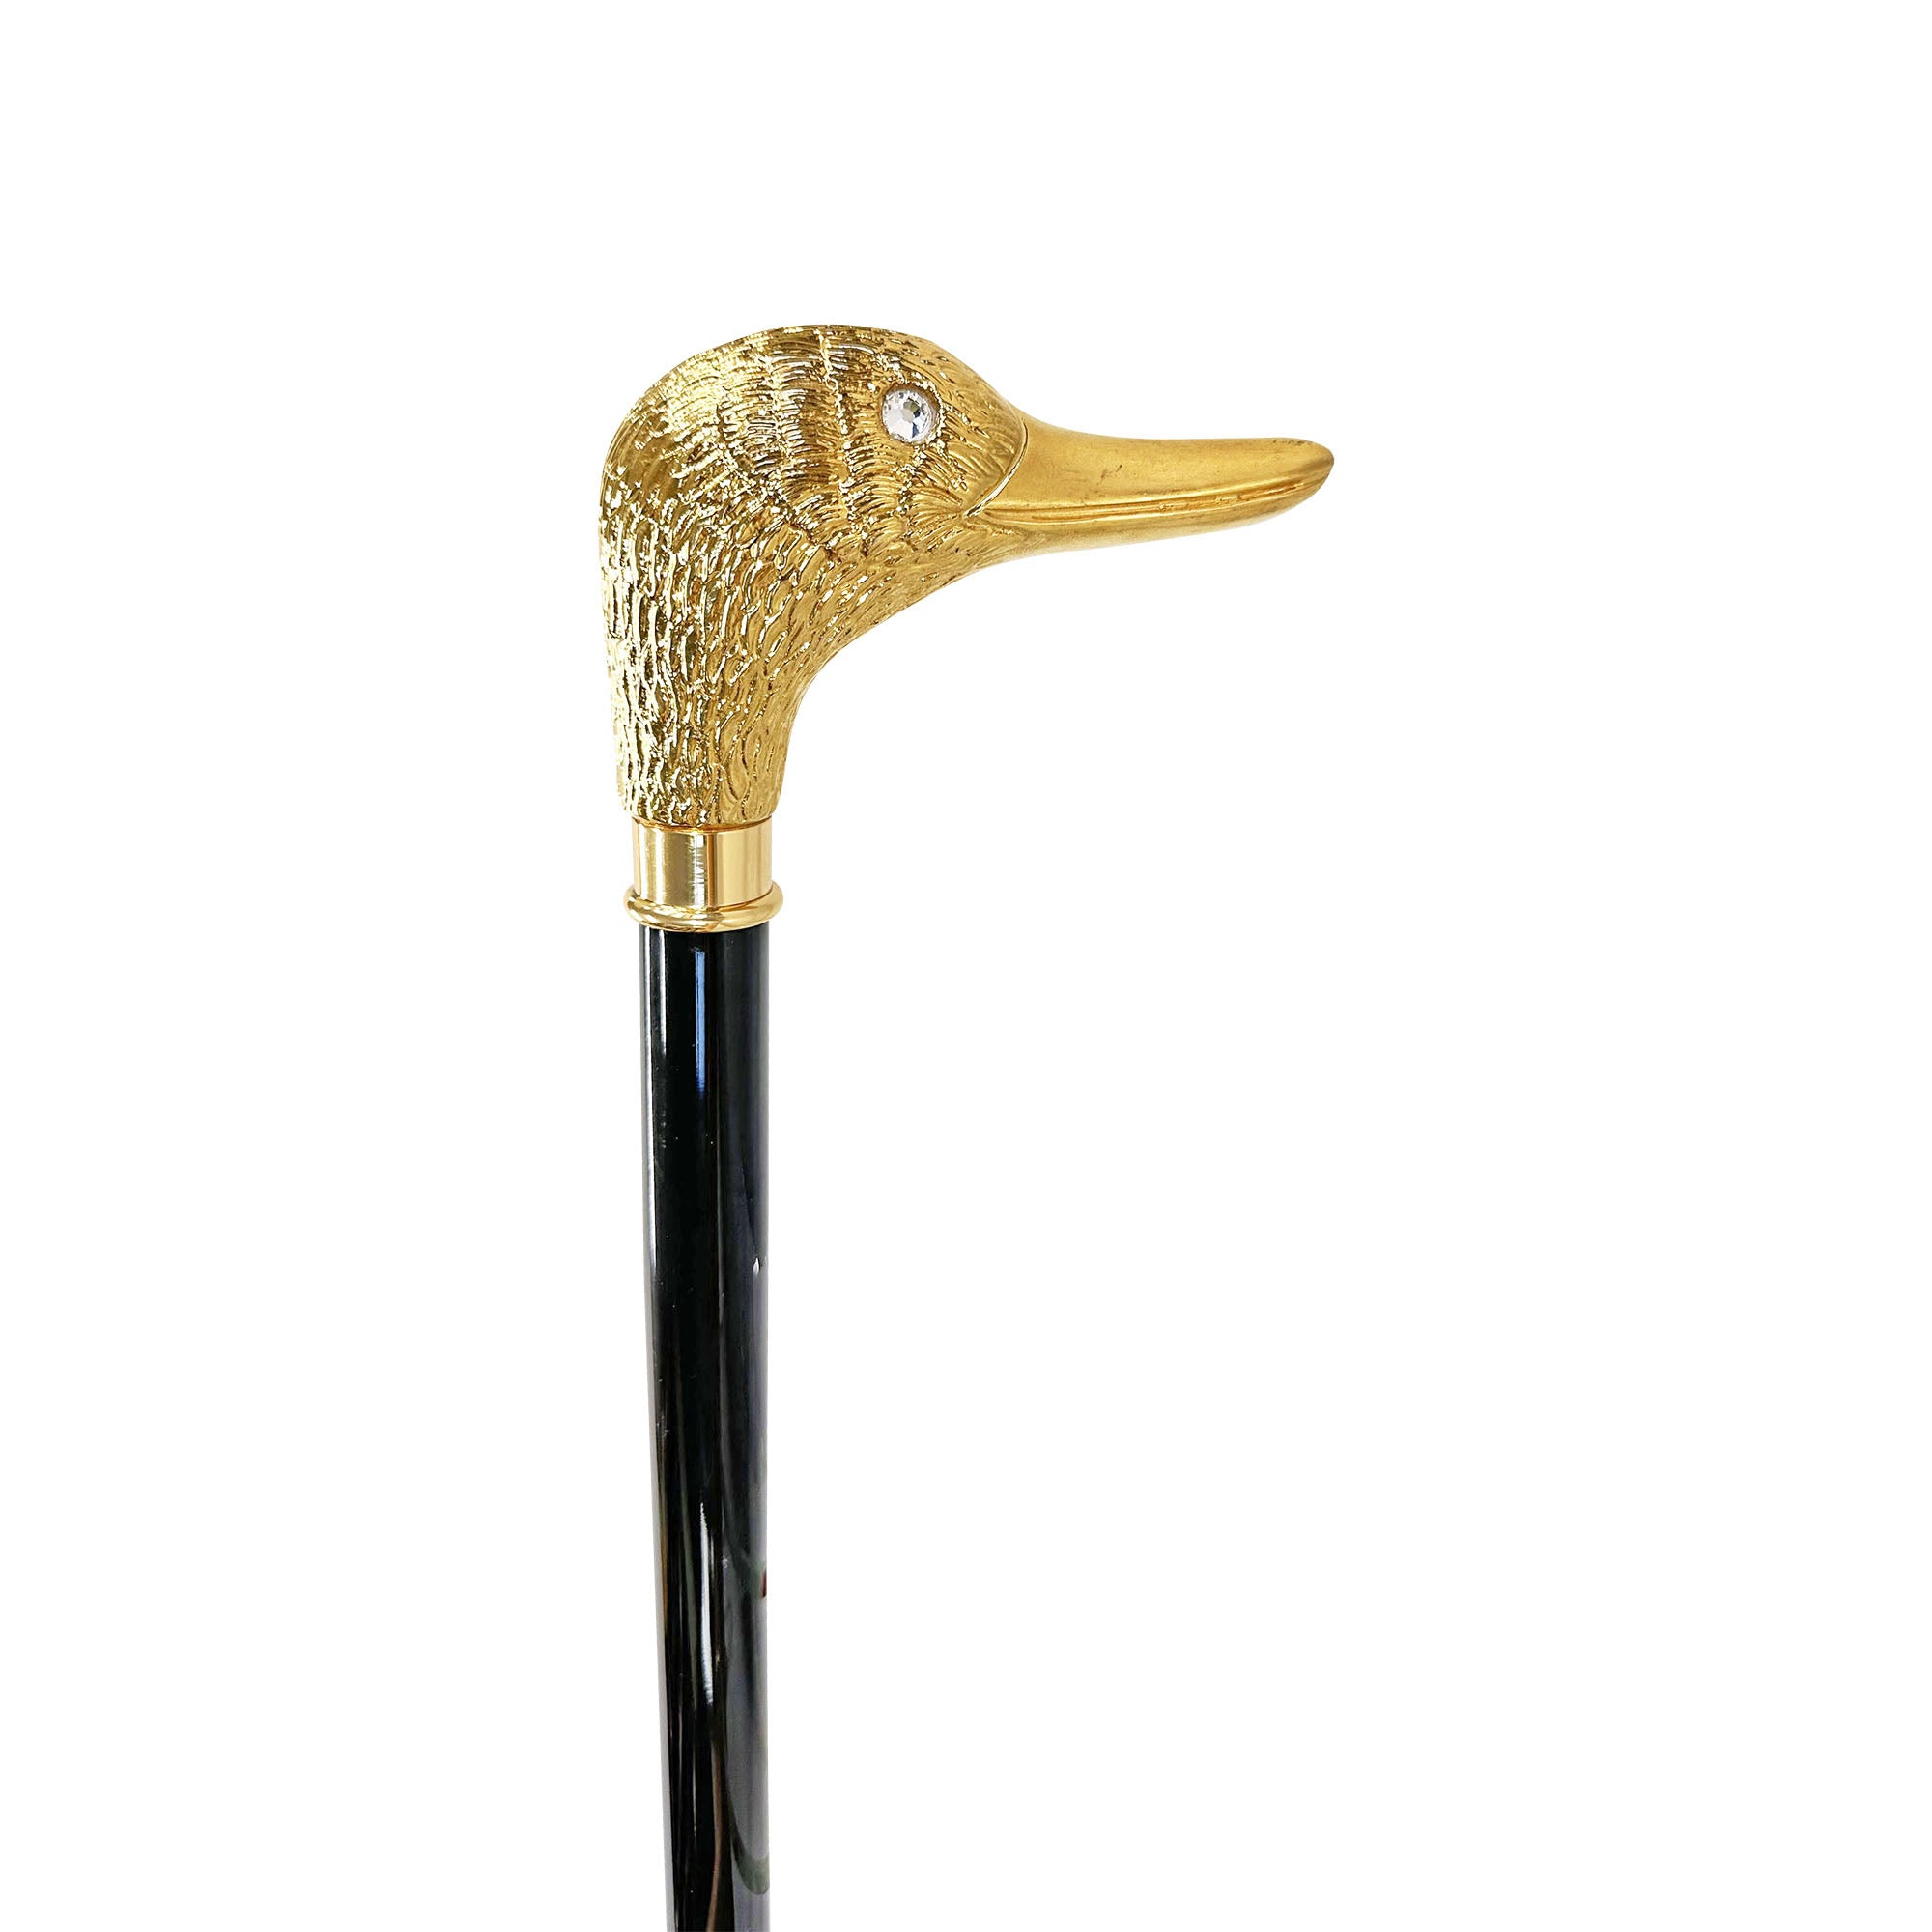 Handmade duck Walking stick - 24K gold-plated